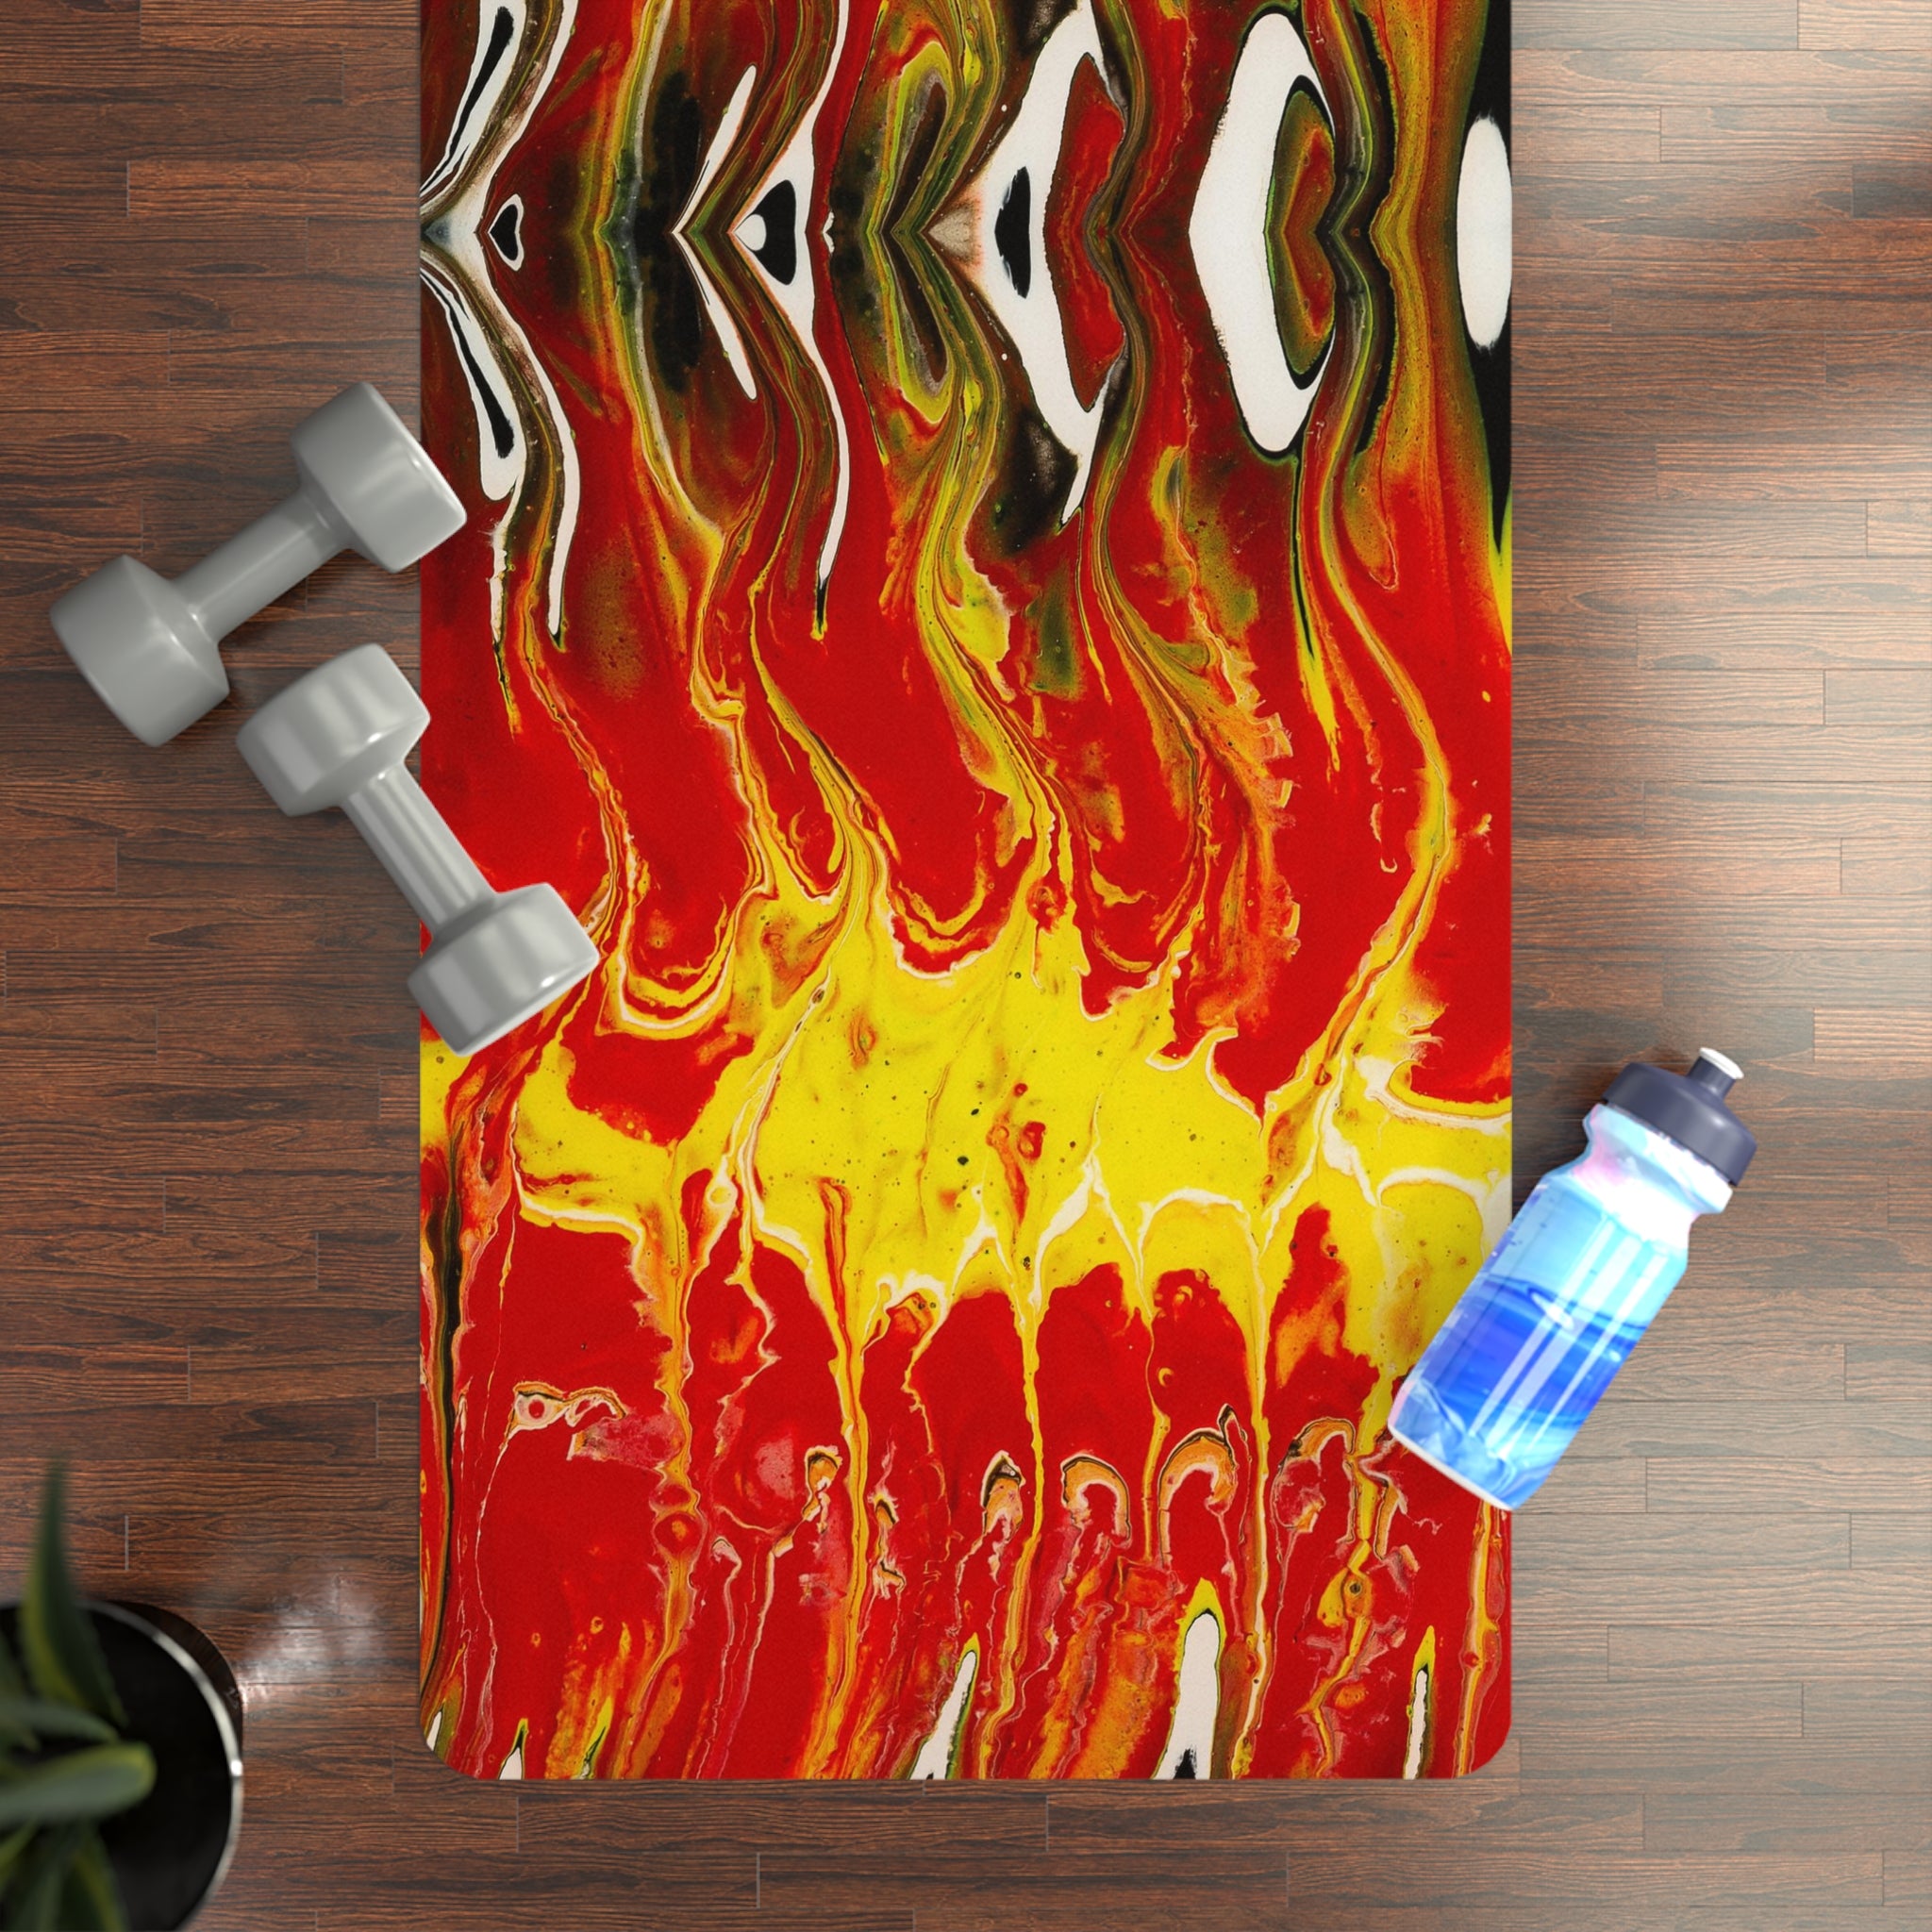 Internal Flames - Rubber Yoga Mat